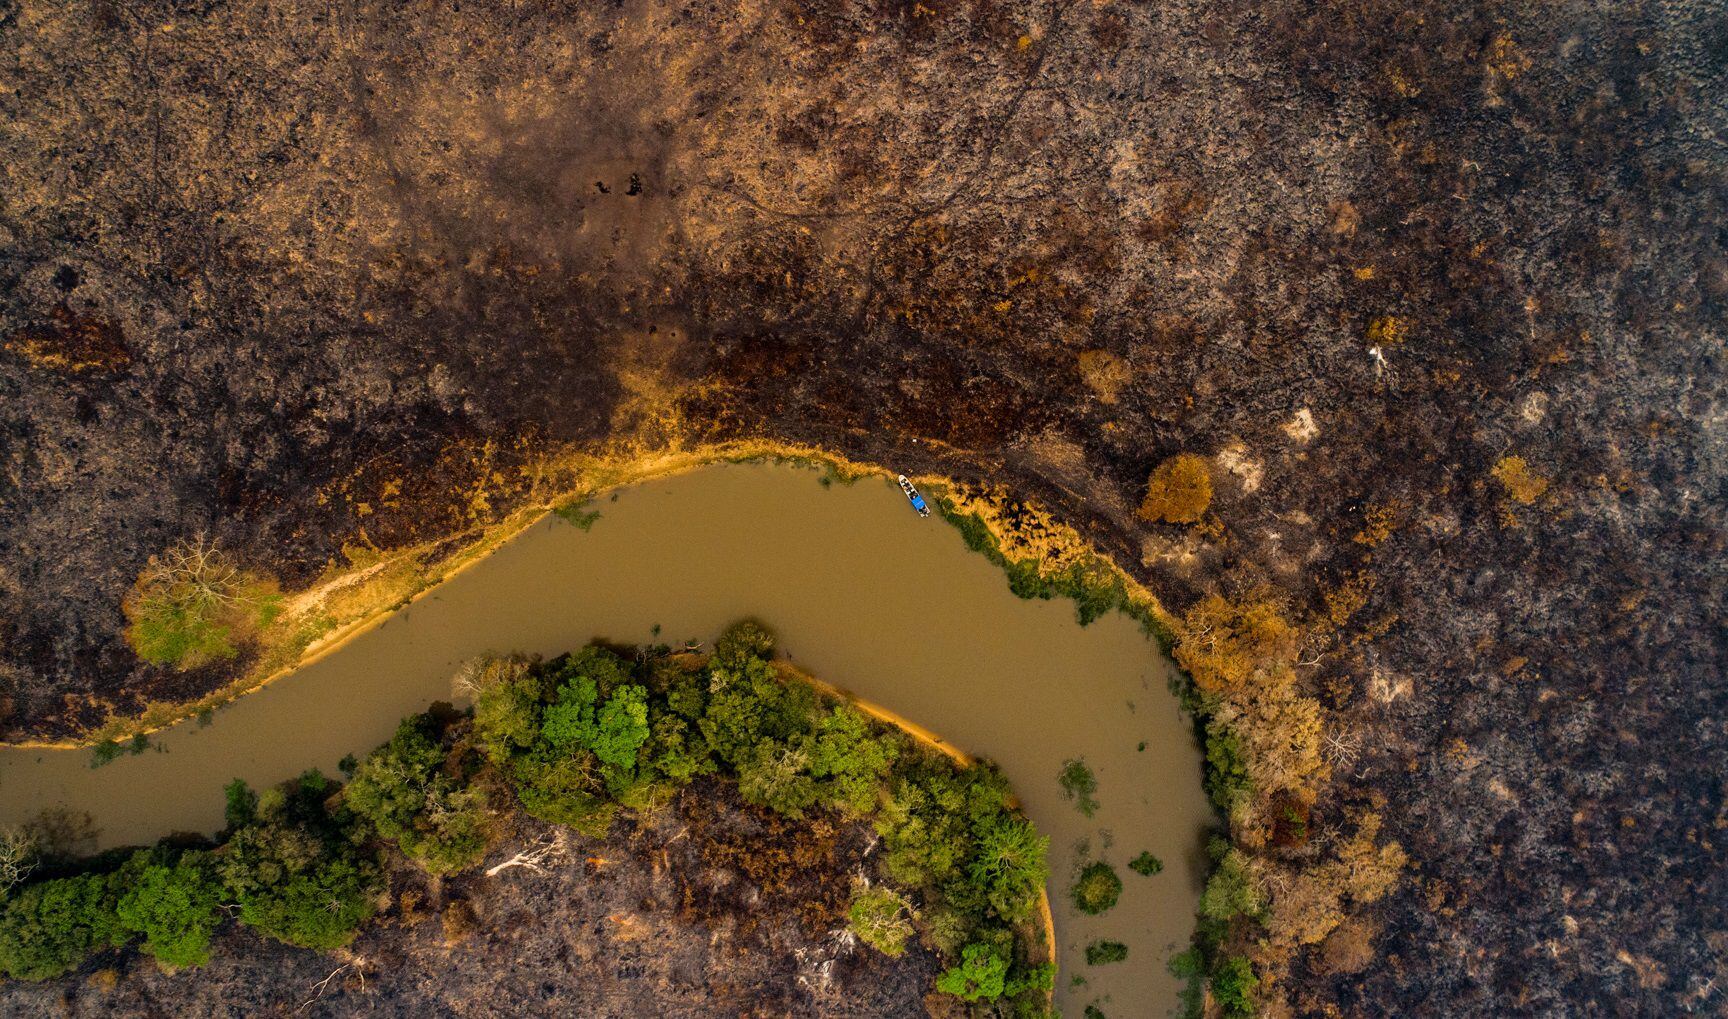 Fotografía de archivo en la que se registró una vista aérea de un río que atraviesa una zona devastada por los incendios forestales, en el estado de Mato Grosso (Brasil). EFE/Rogério Florentino 